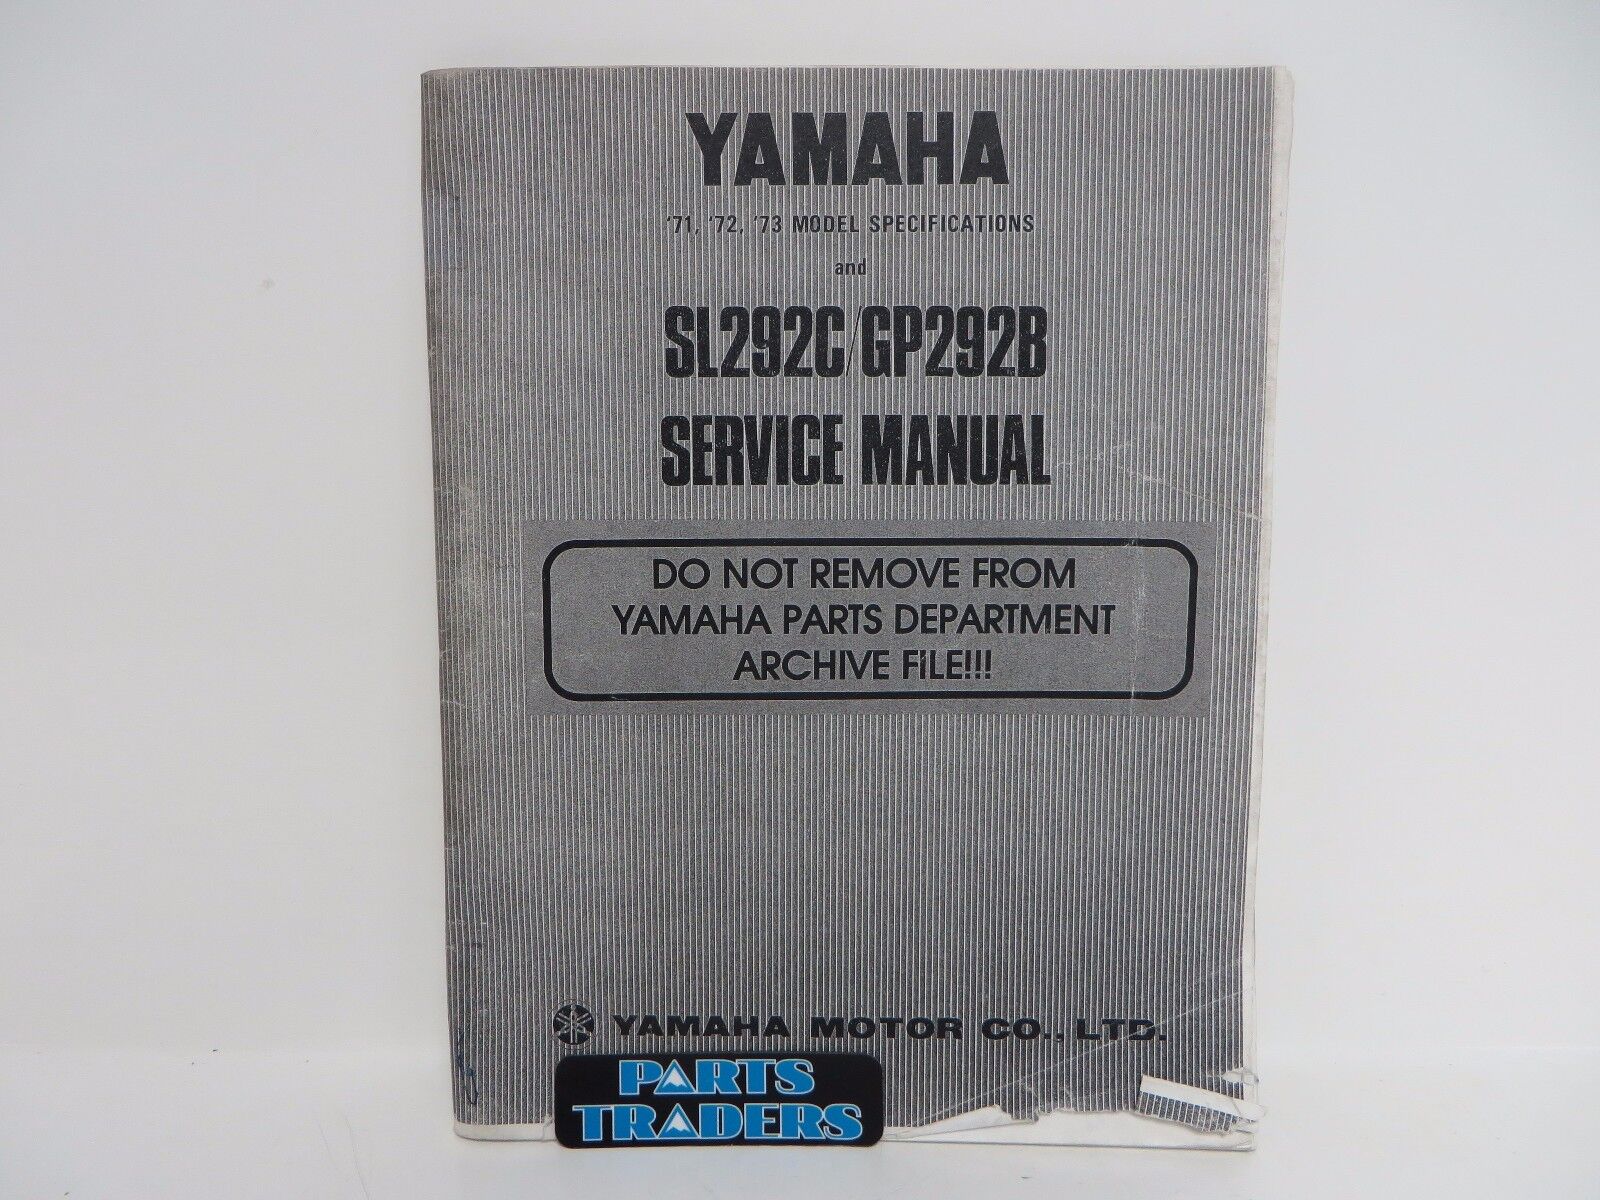 Genuine Yamaha Dealer Service Manual SL292C GP292B LIT-12618-39-